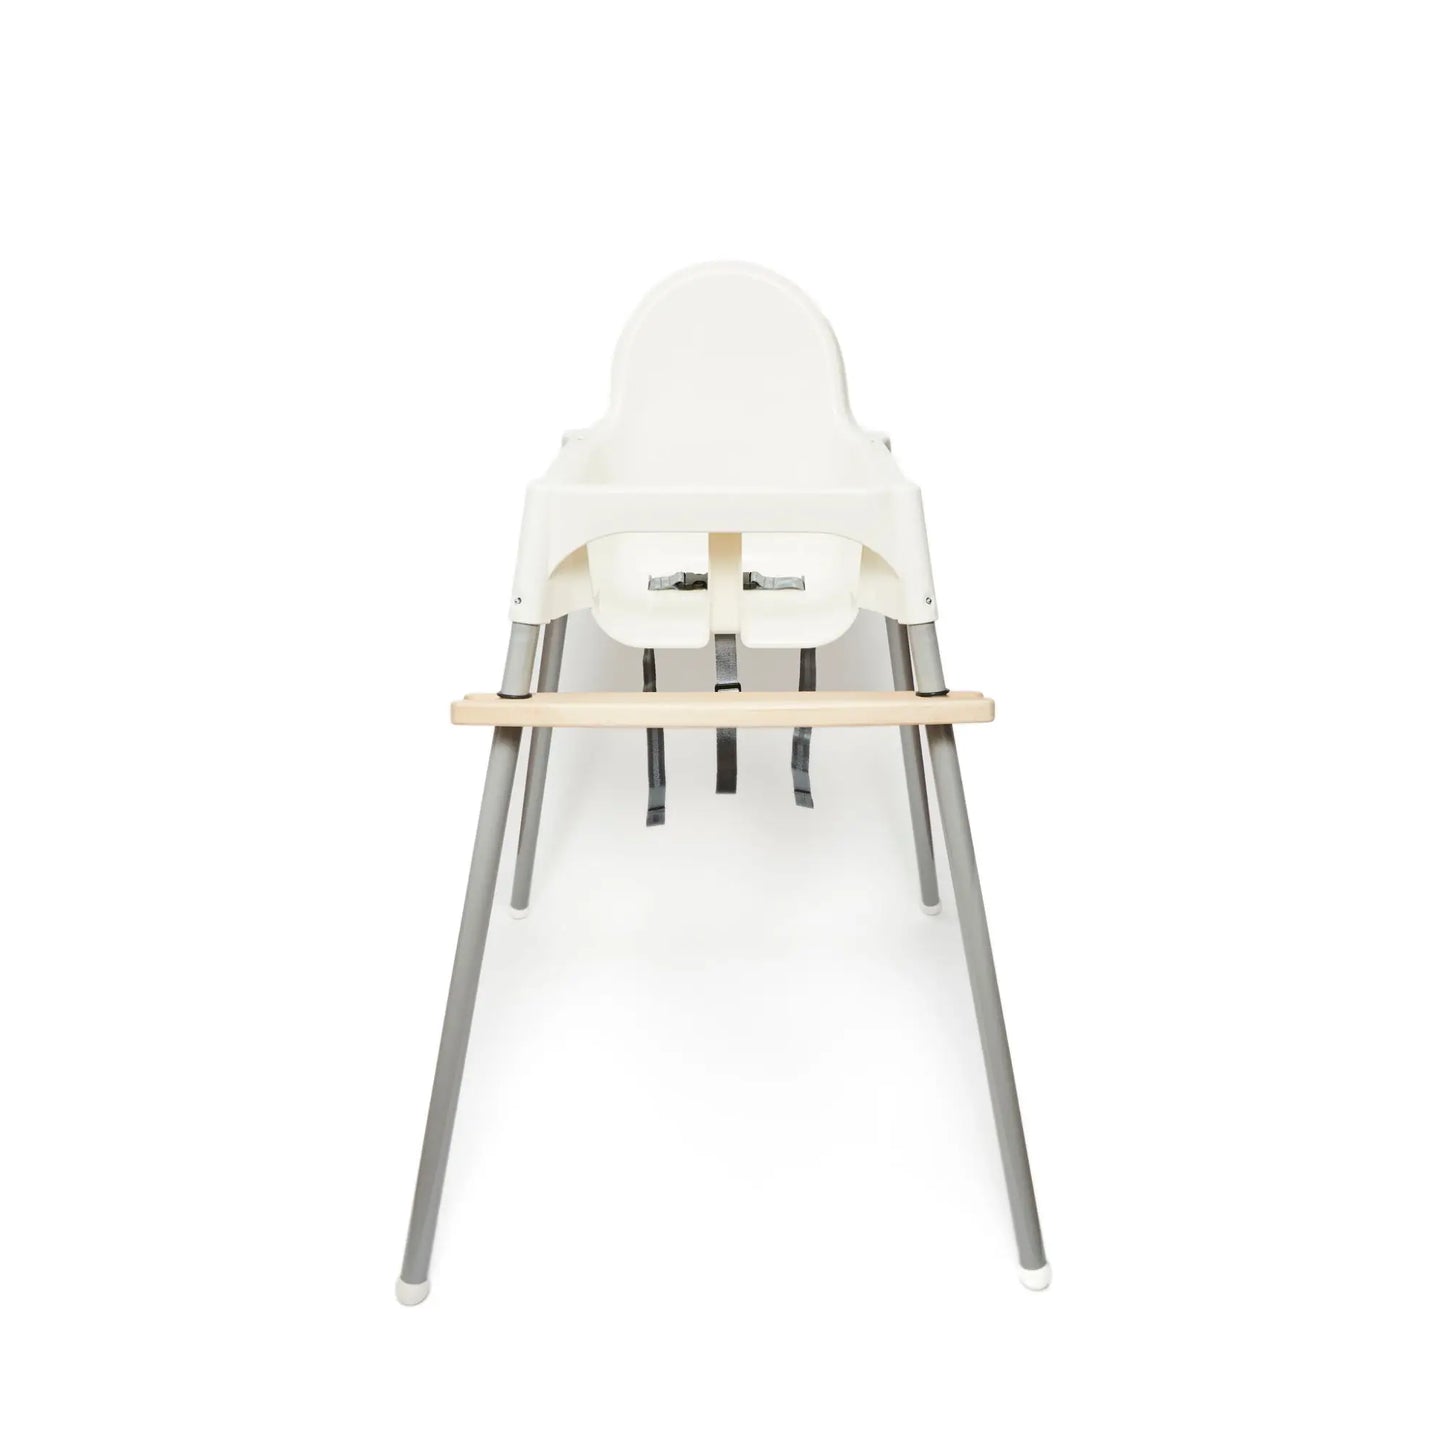 IKEA Antilop High Chair Footrest